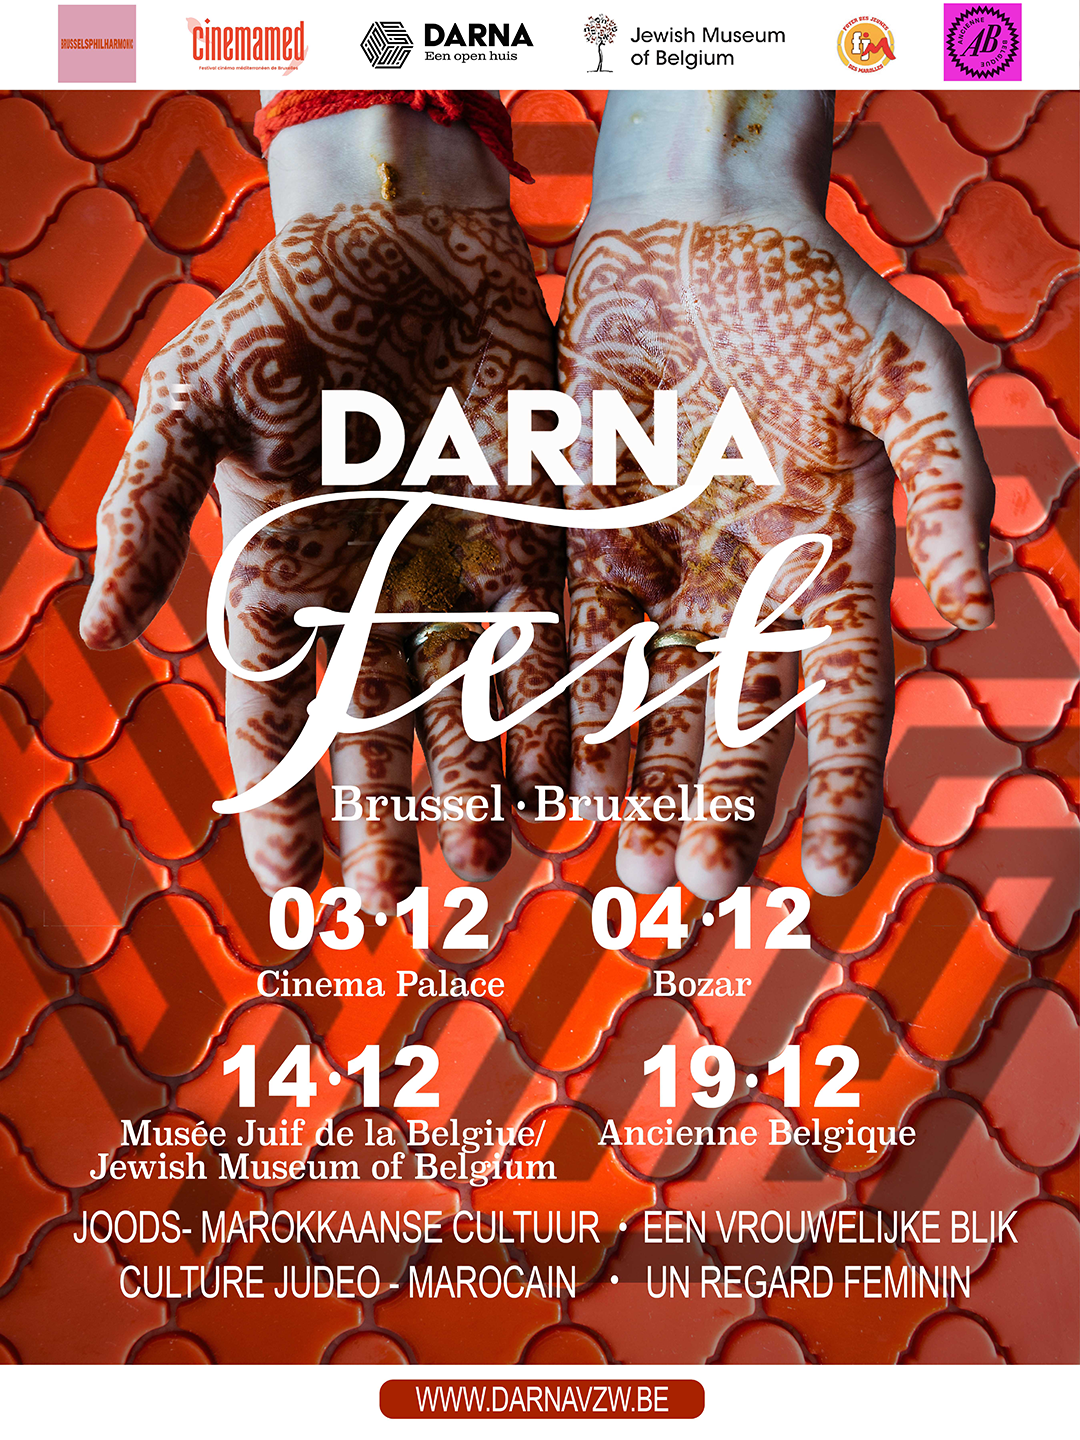 DarnaFest2022